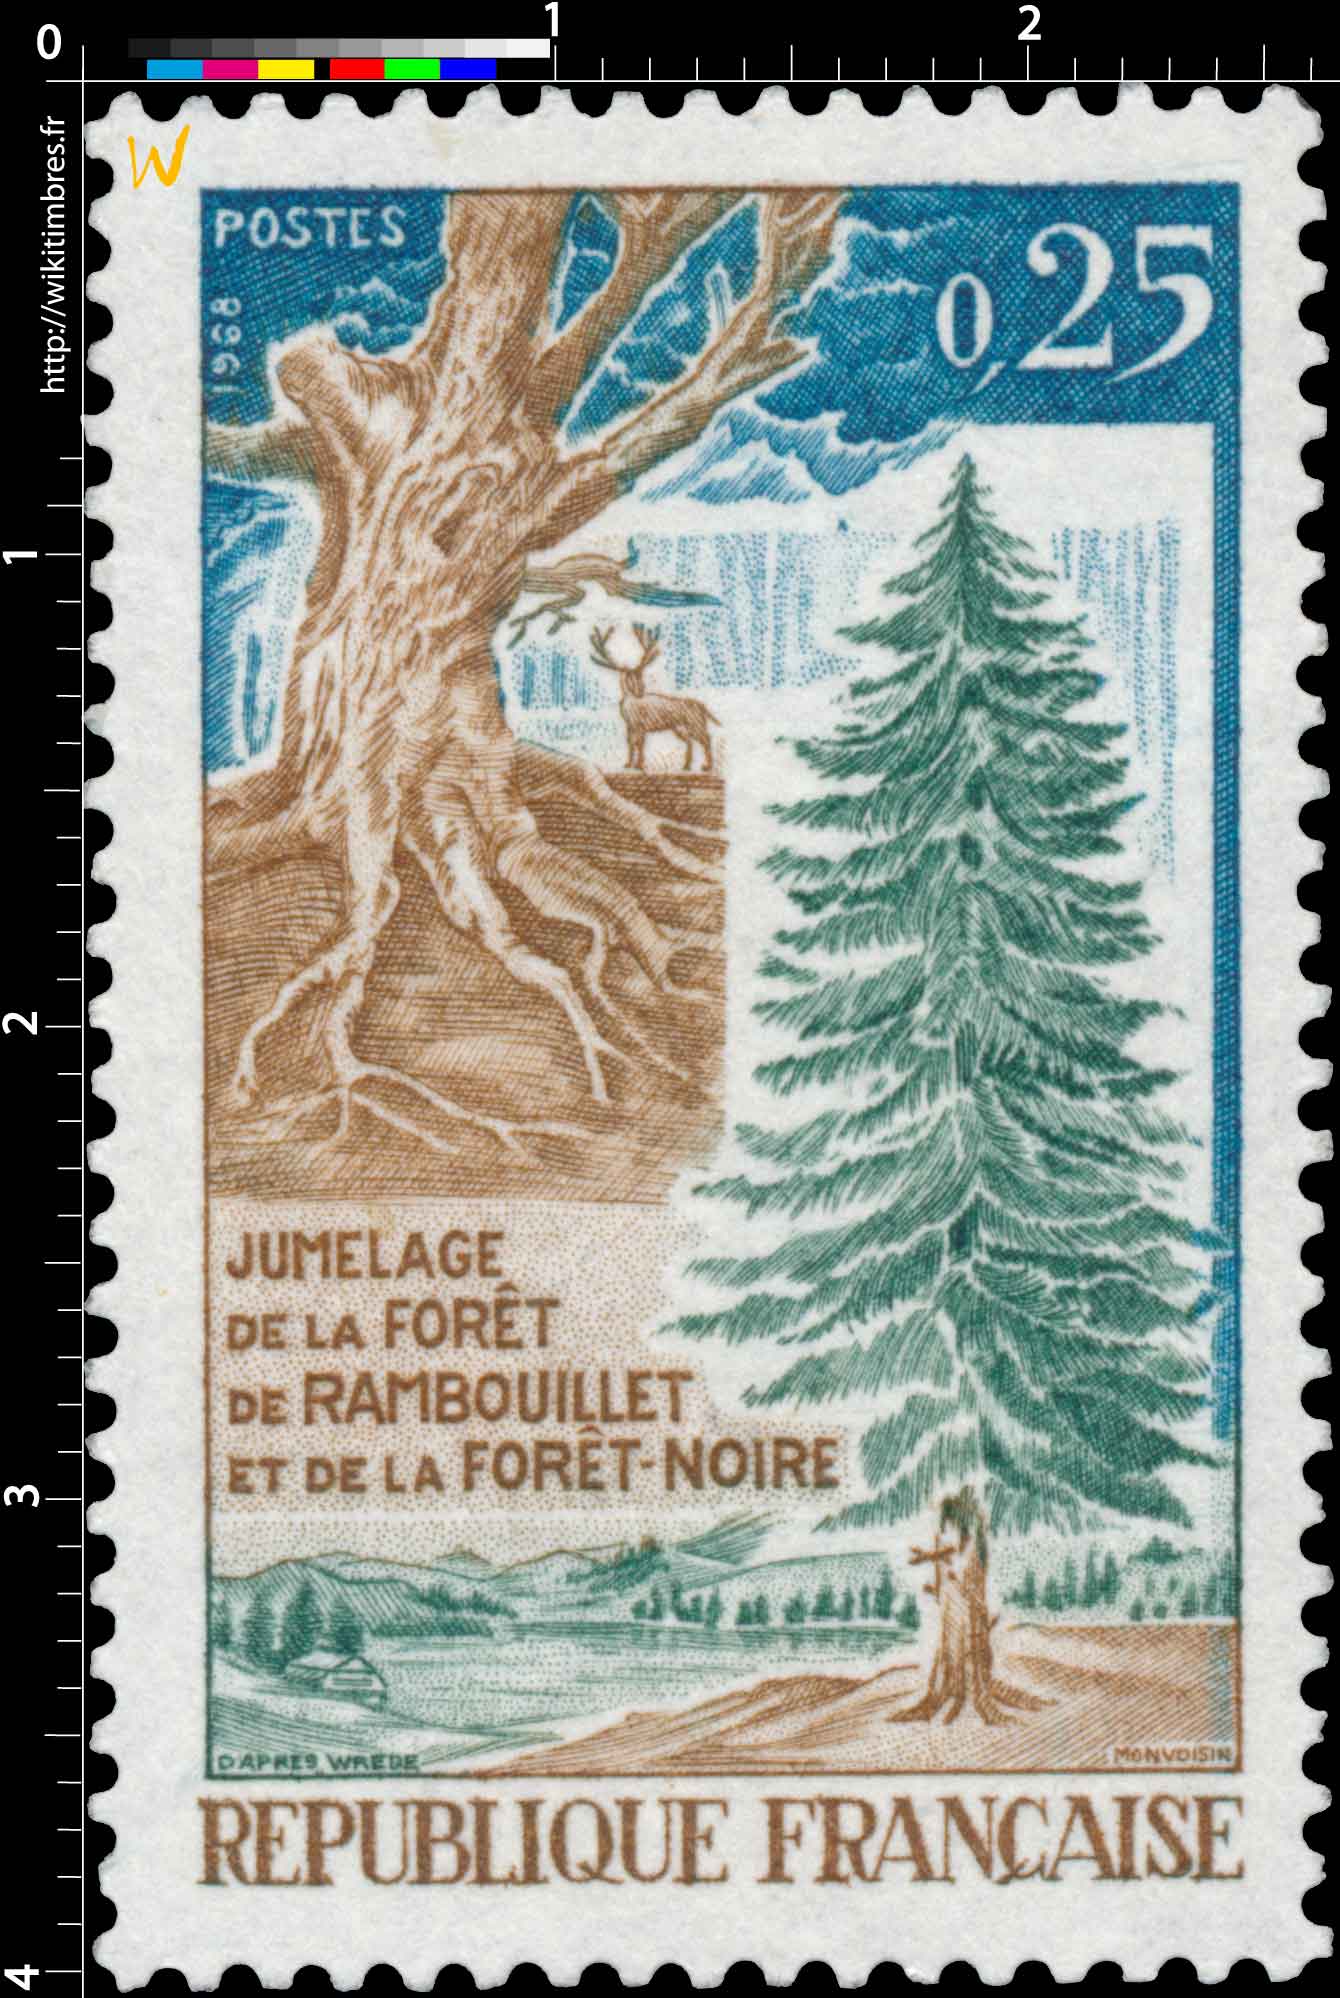 1968 JUMELAGE DE LA FORÊT DE RAMBOUILLET ET DE LA FORÊT-NOIRE